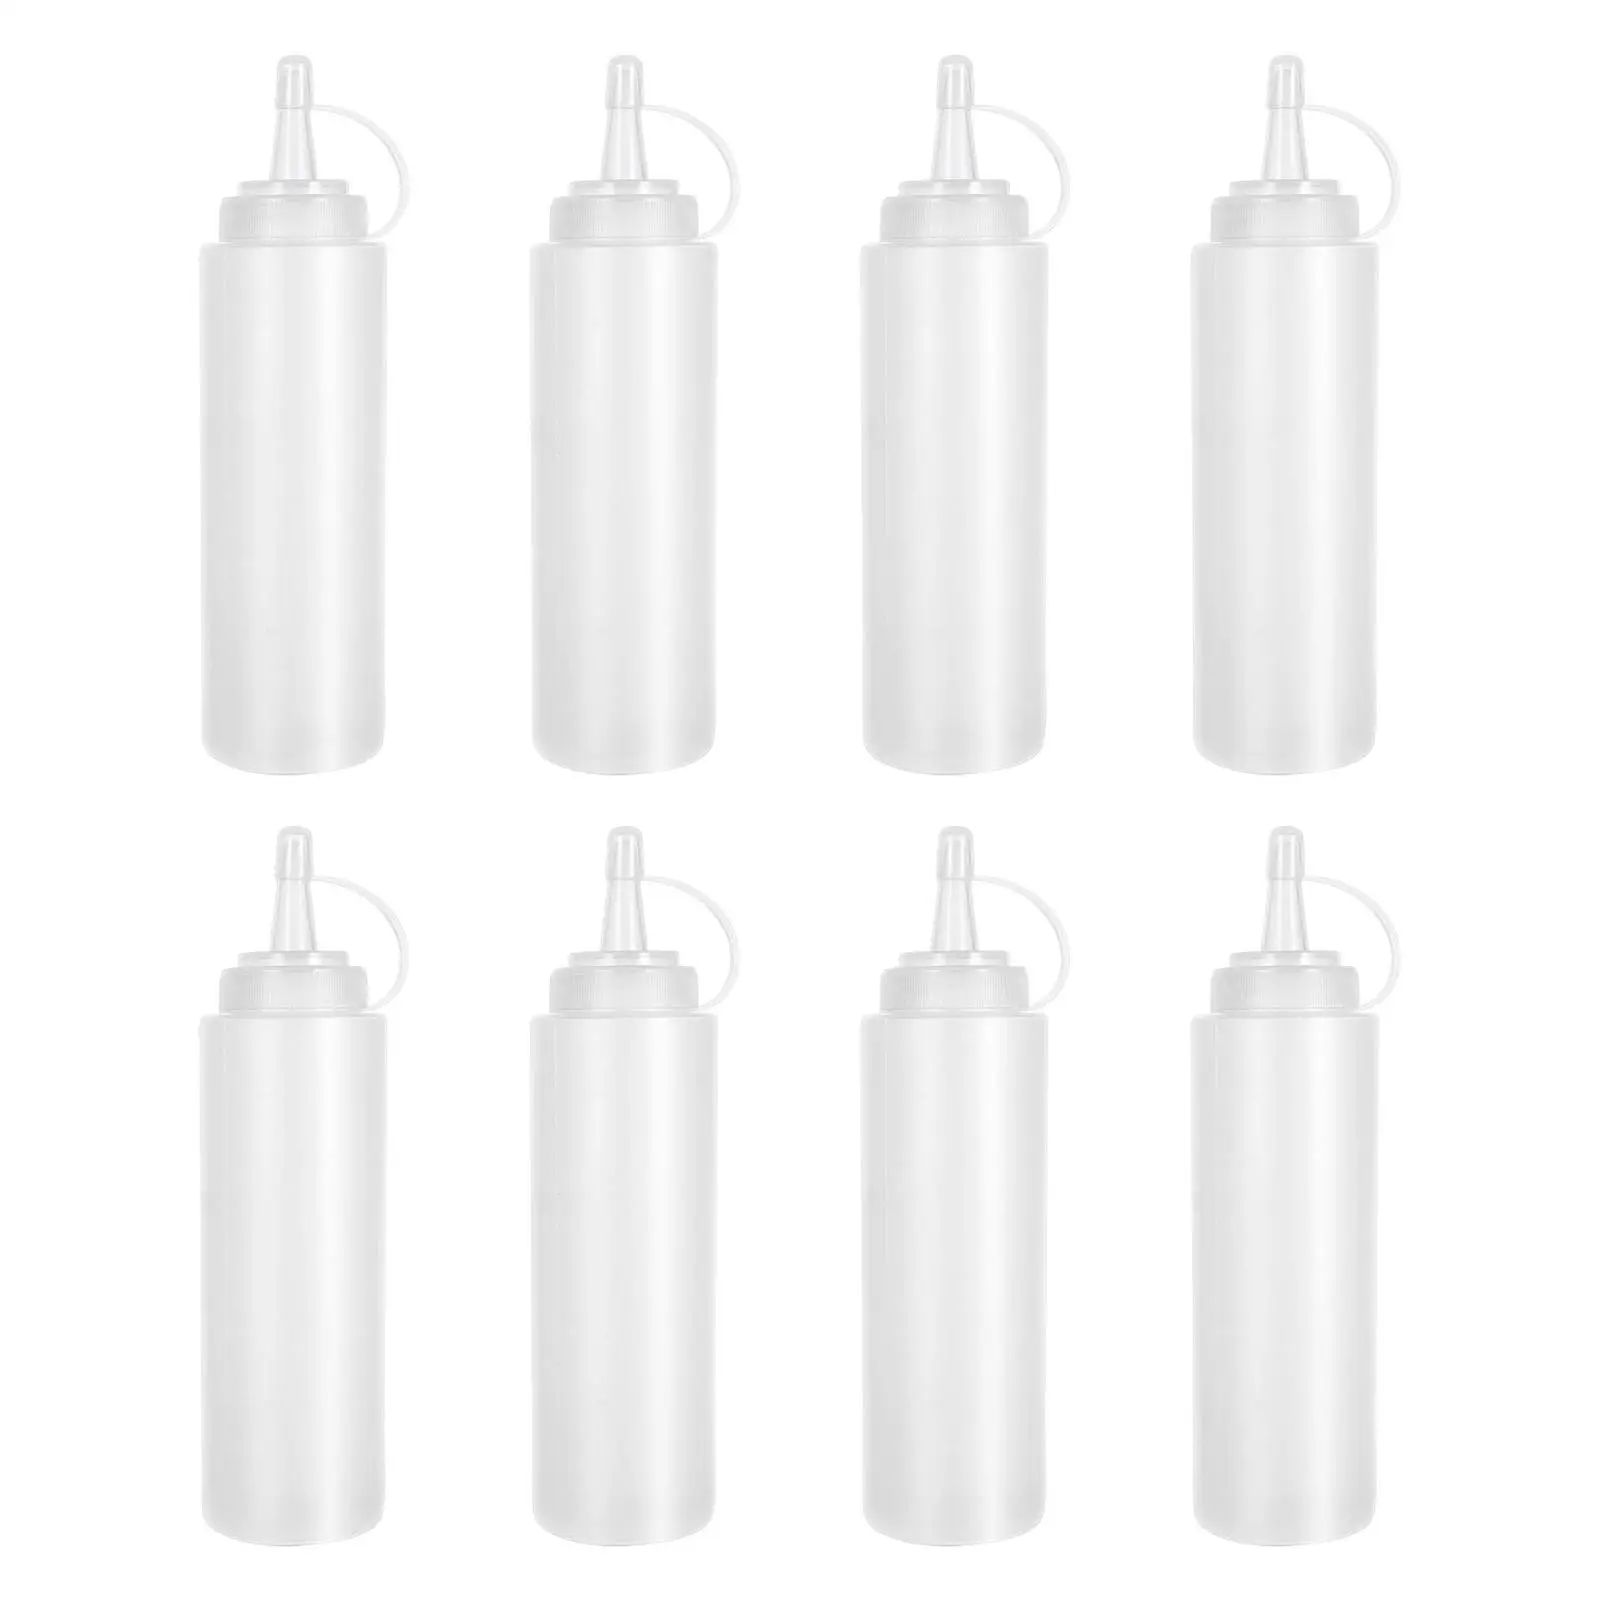 8x Household Sauce Bottles Condiment Bottles Refillable Oil Ketchup Dispenser